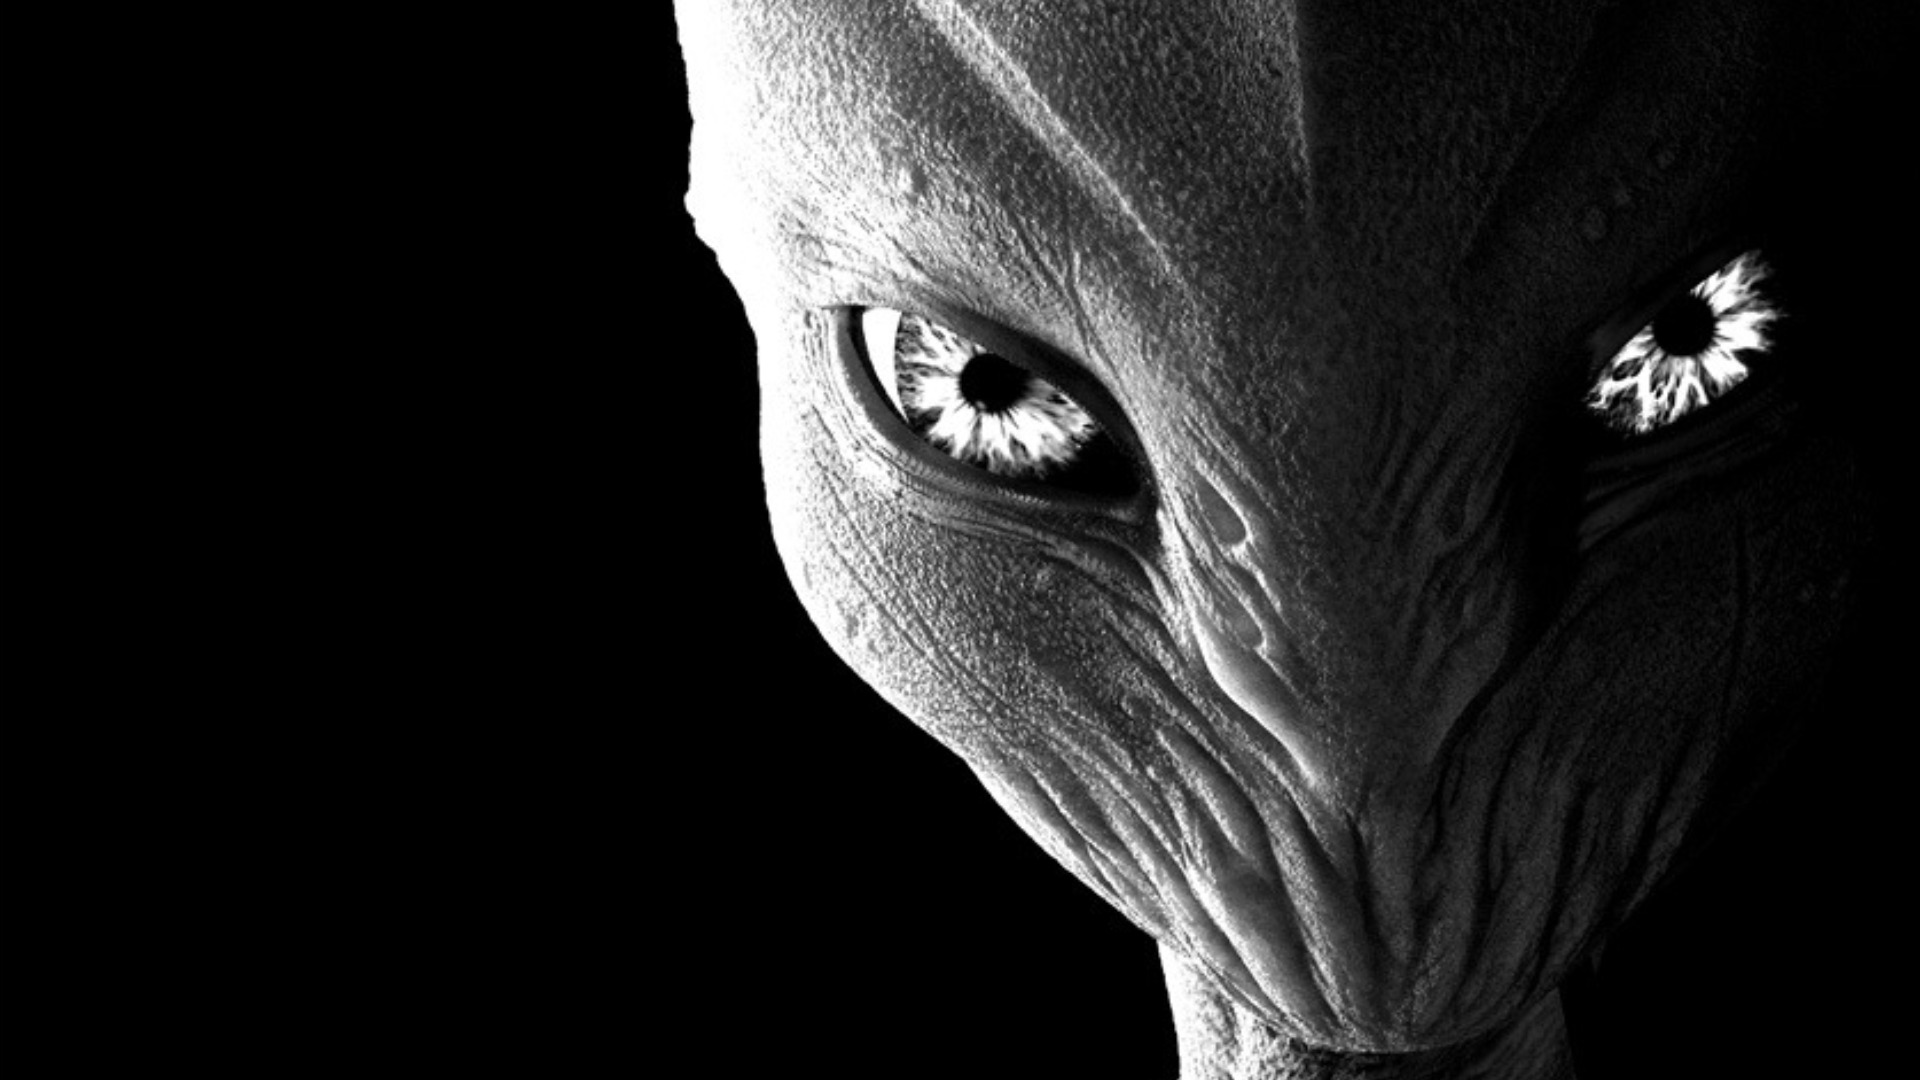 aliens s images aliens